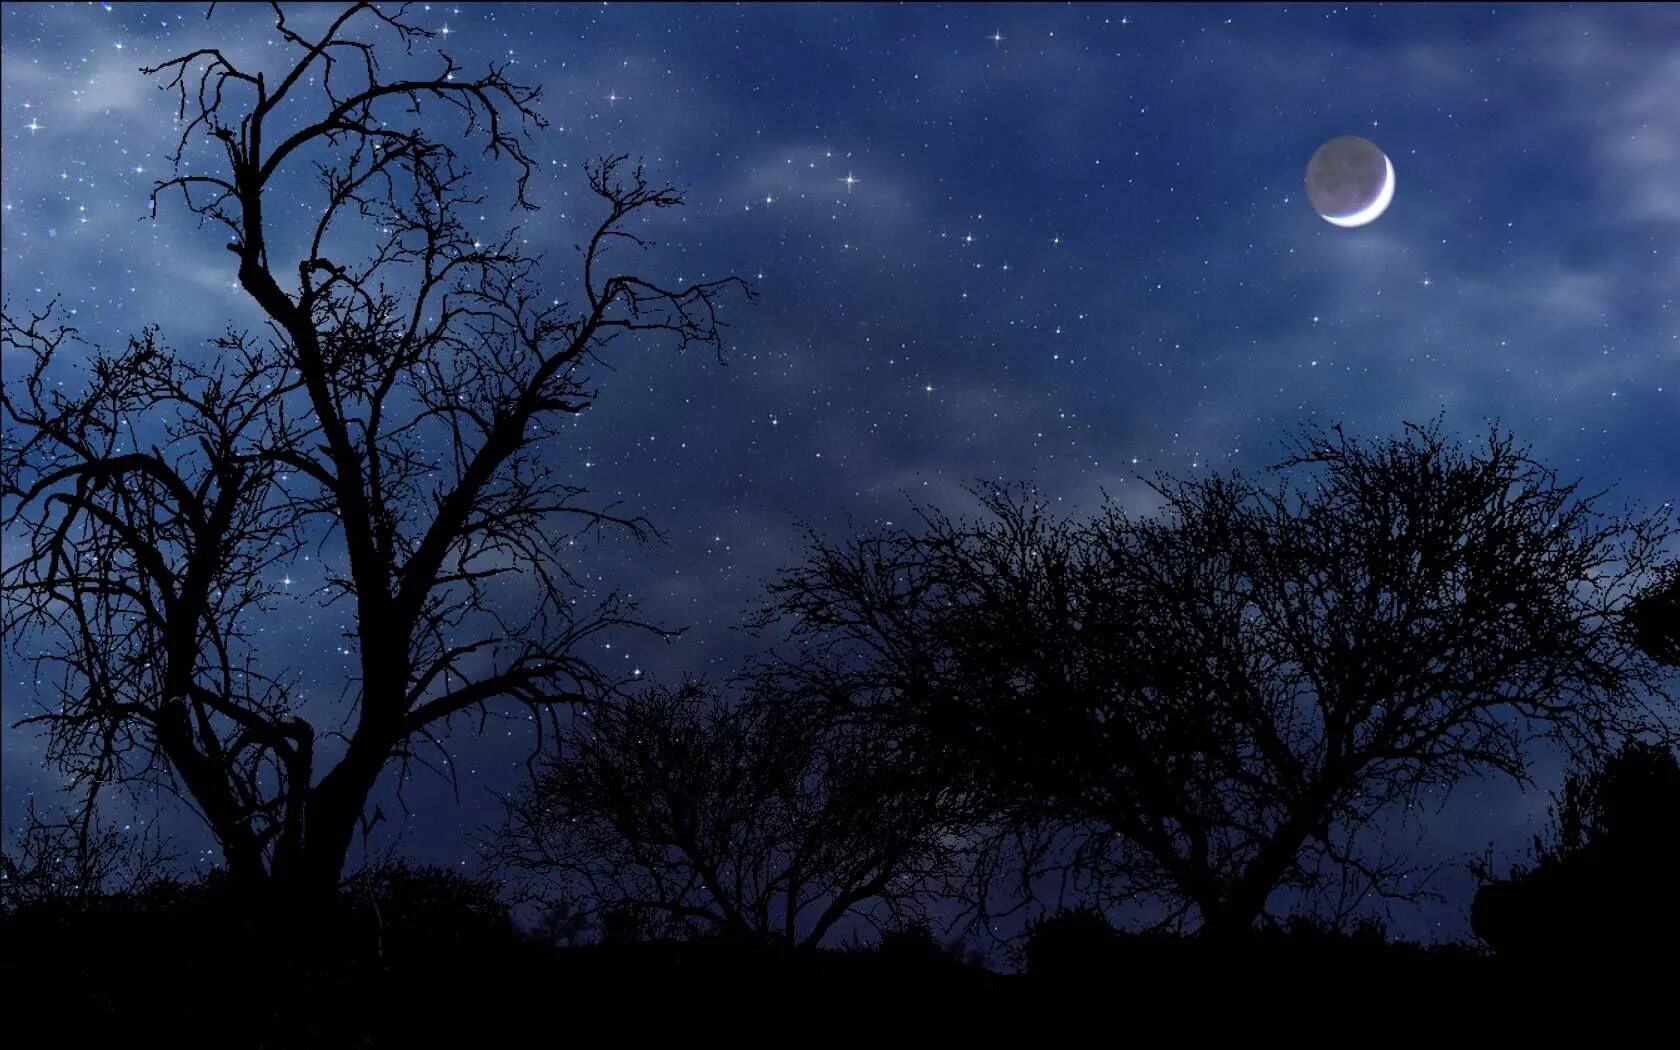 1 45 ночи. Ночное небо с луной. Ночное небо со звездами и луной. Ночное небо с месяцем. Звездное небо с луной.